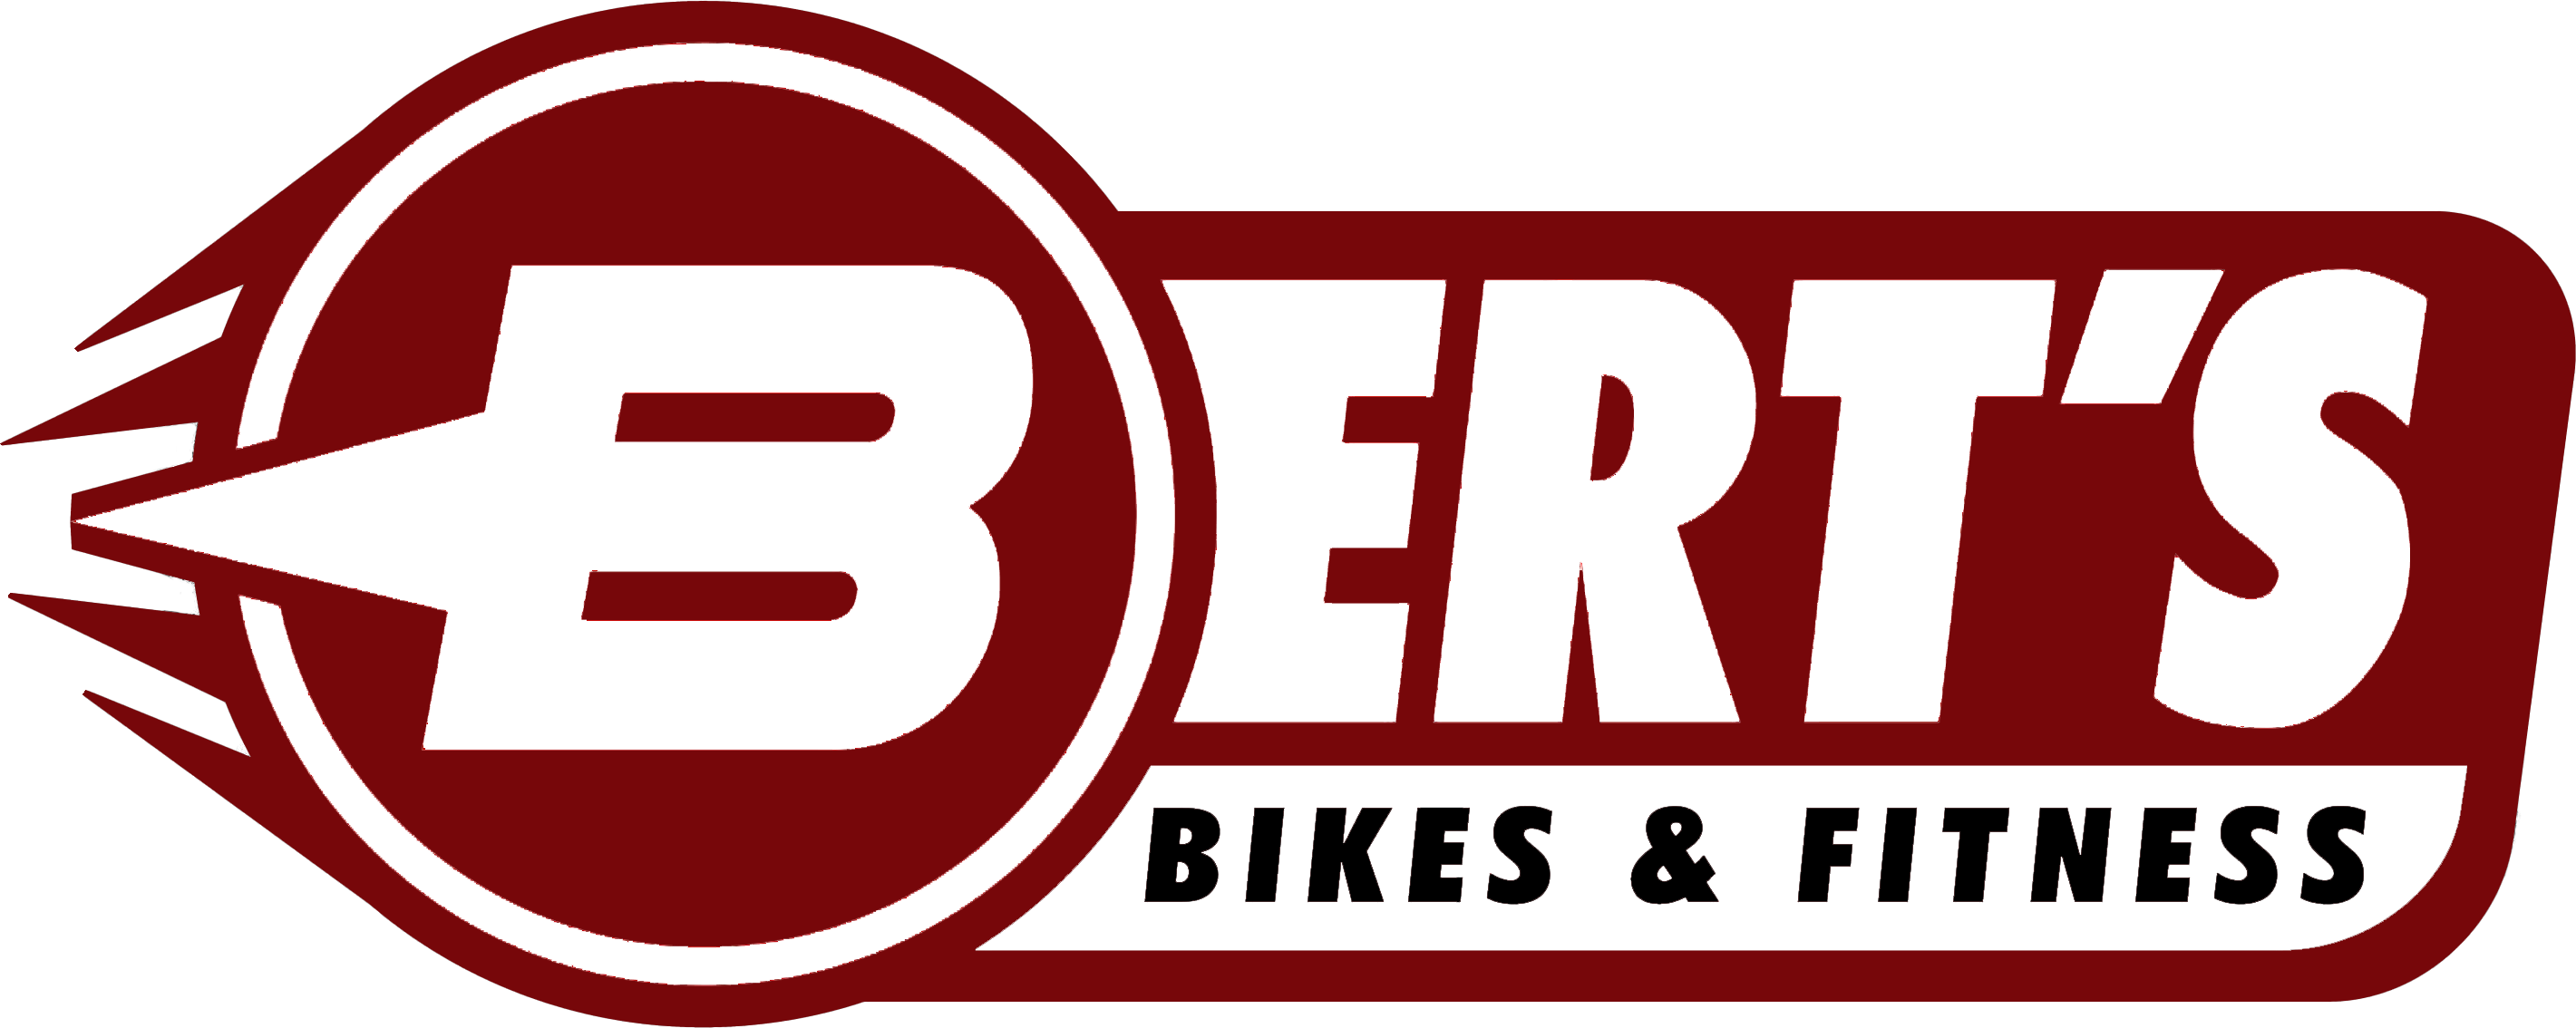 bert's bikes near me